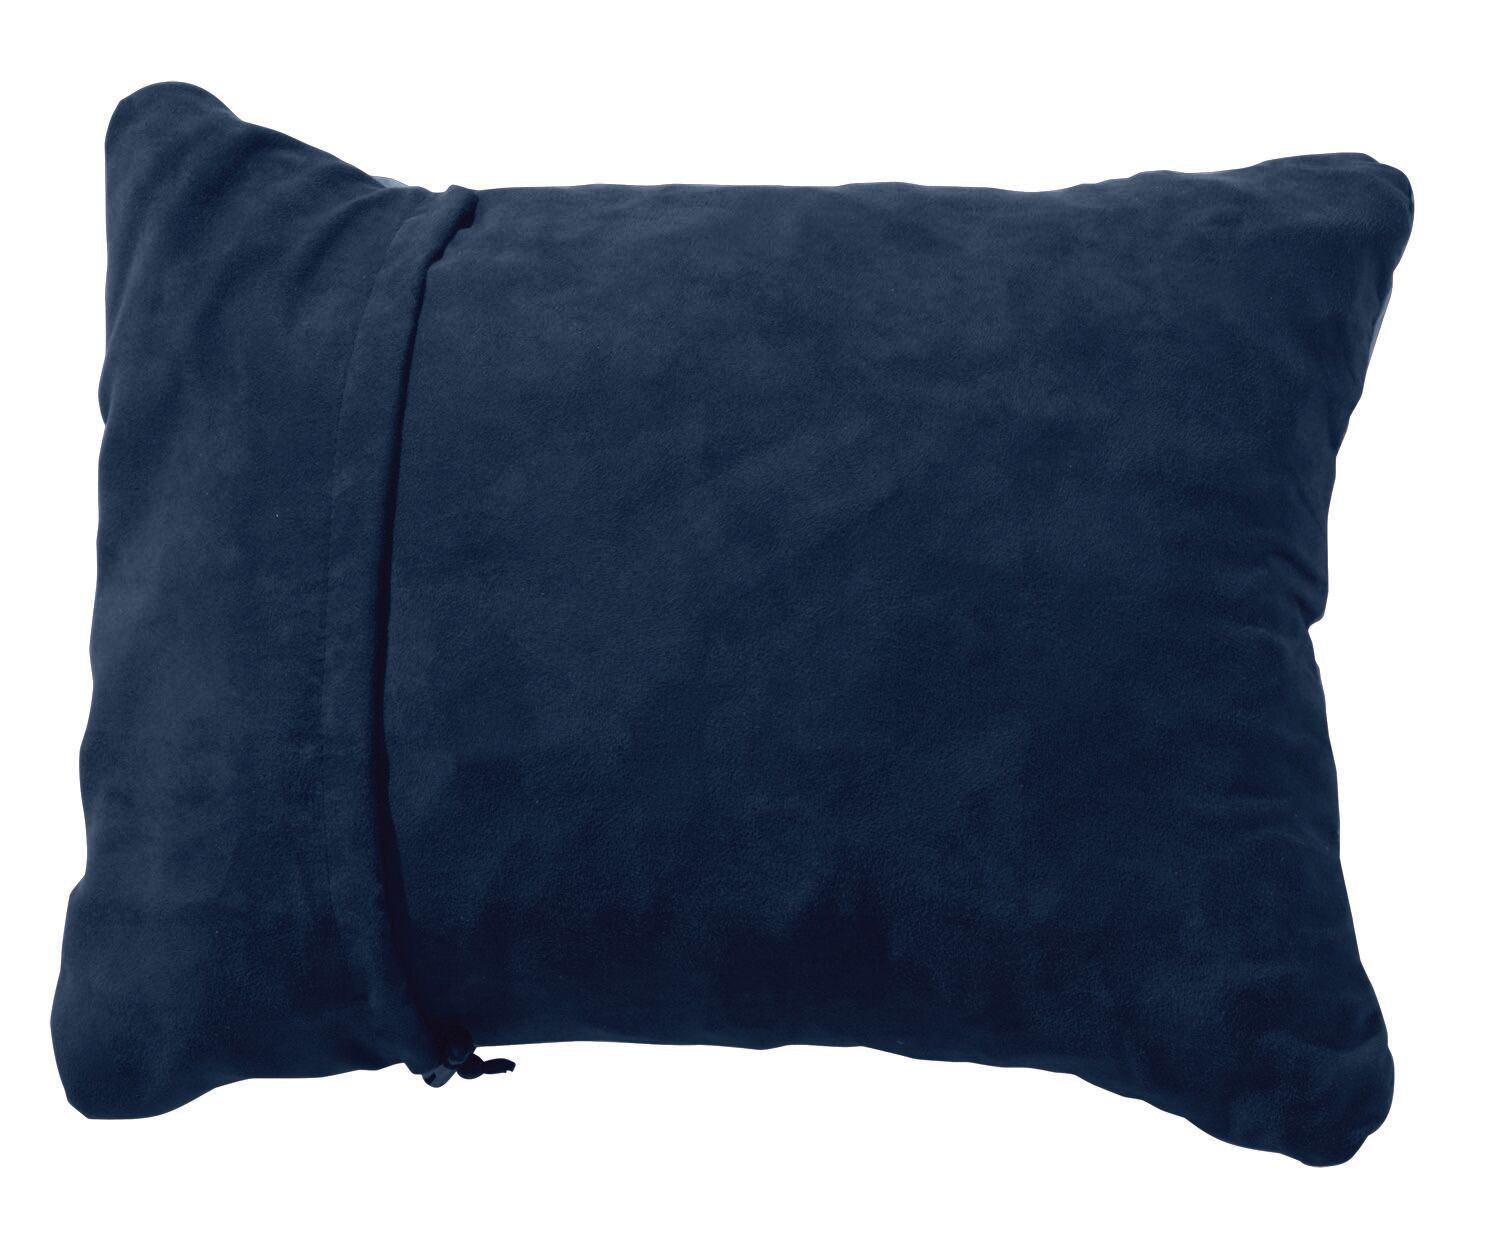 Thermarest Pillow Medium - Pude